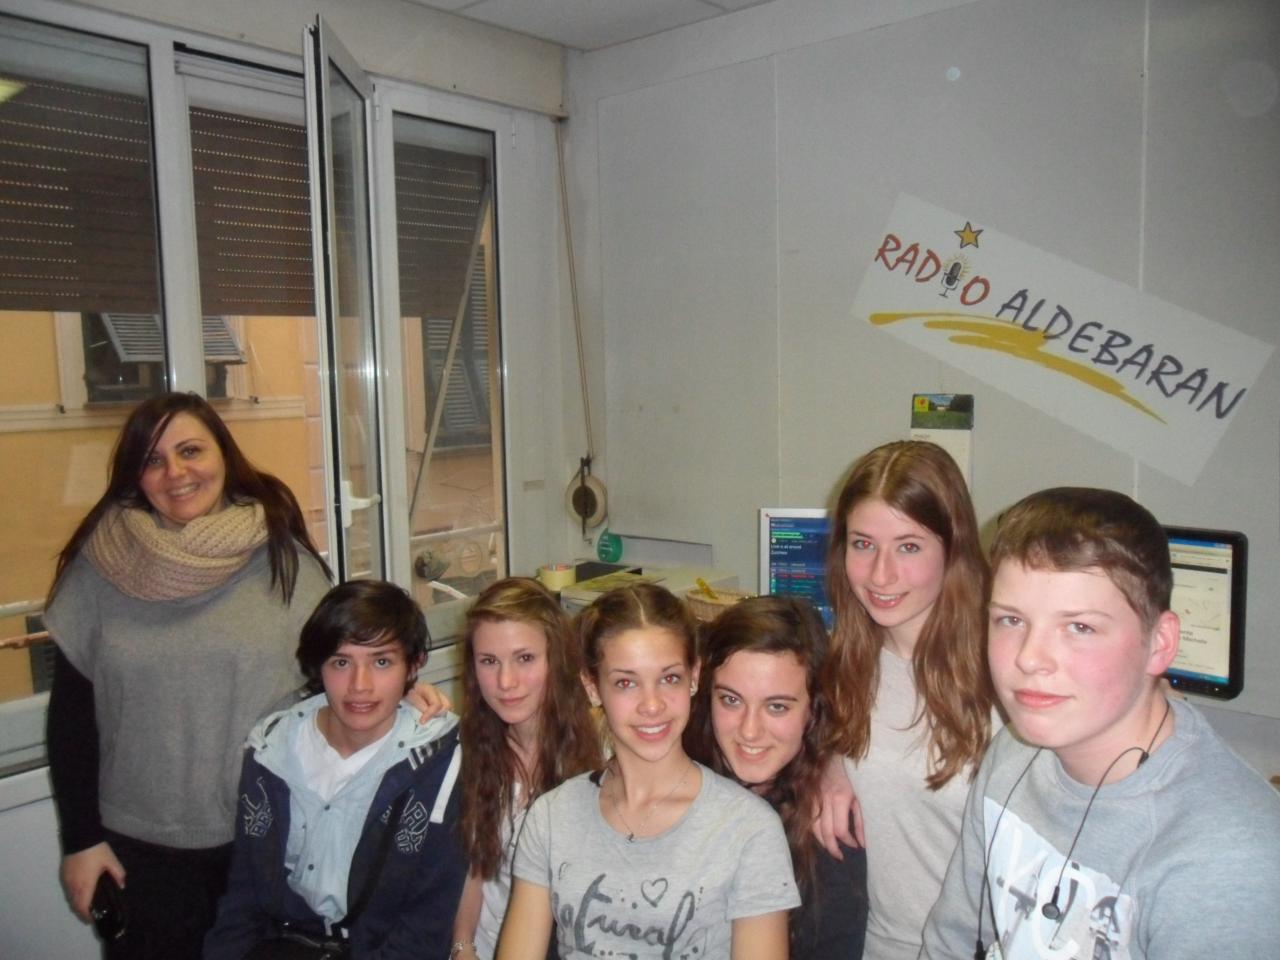 Dalla Germania, giovani studenti in visita a Radio Aldebaran